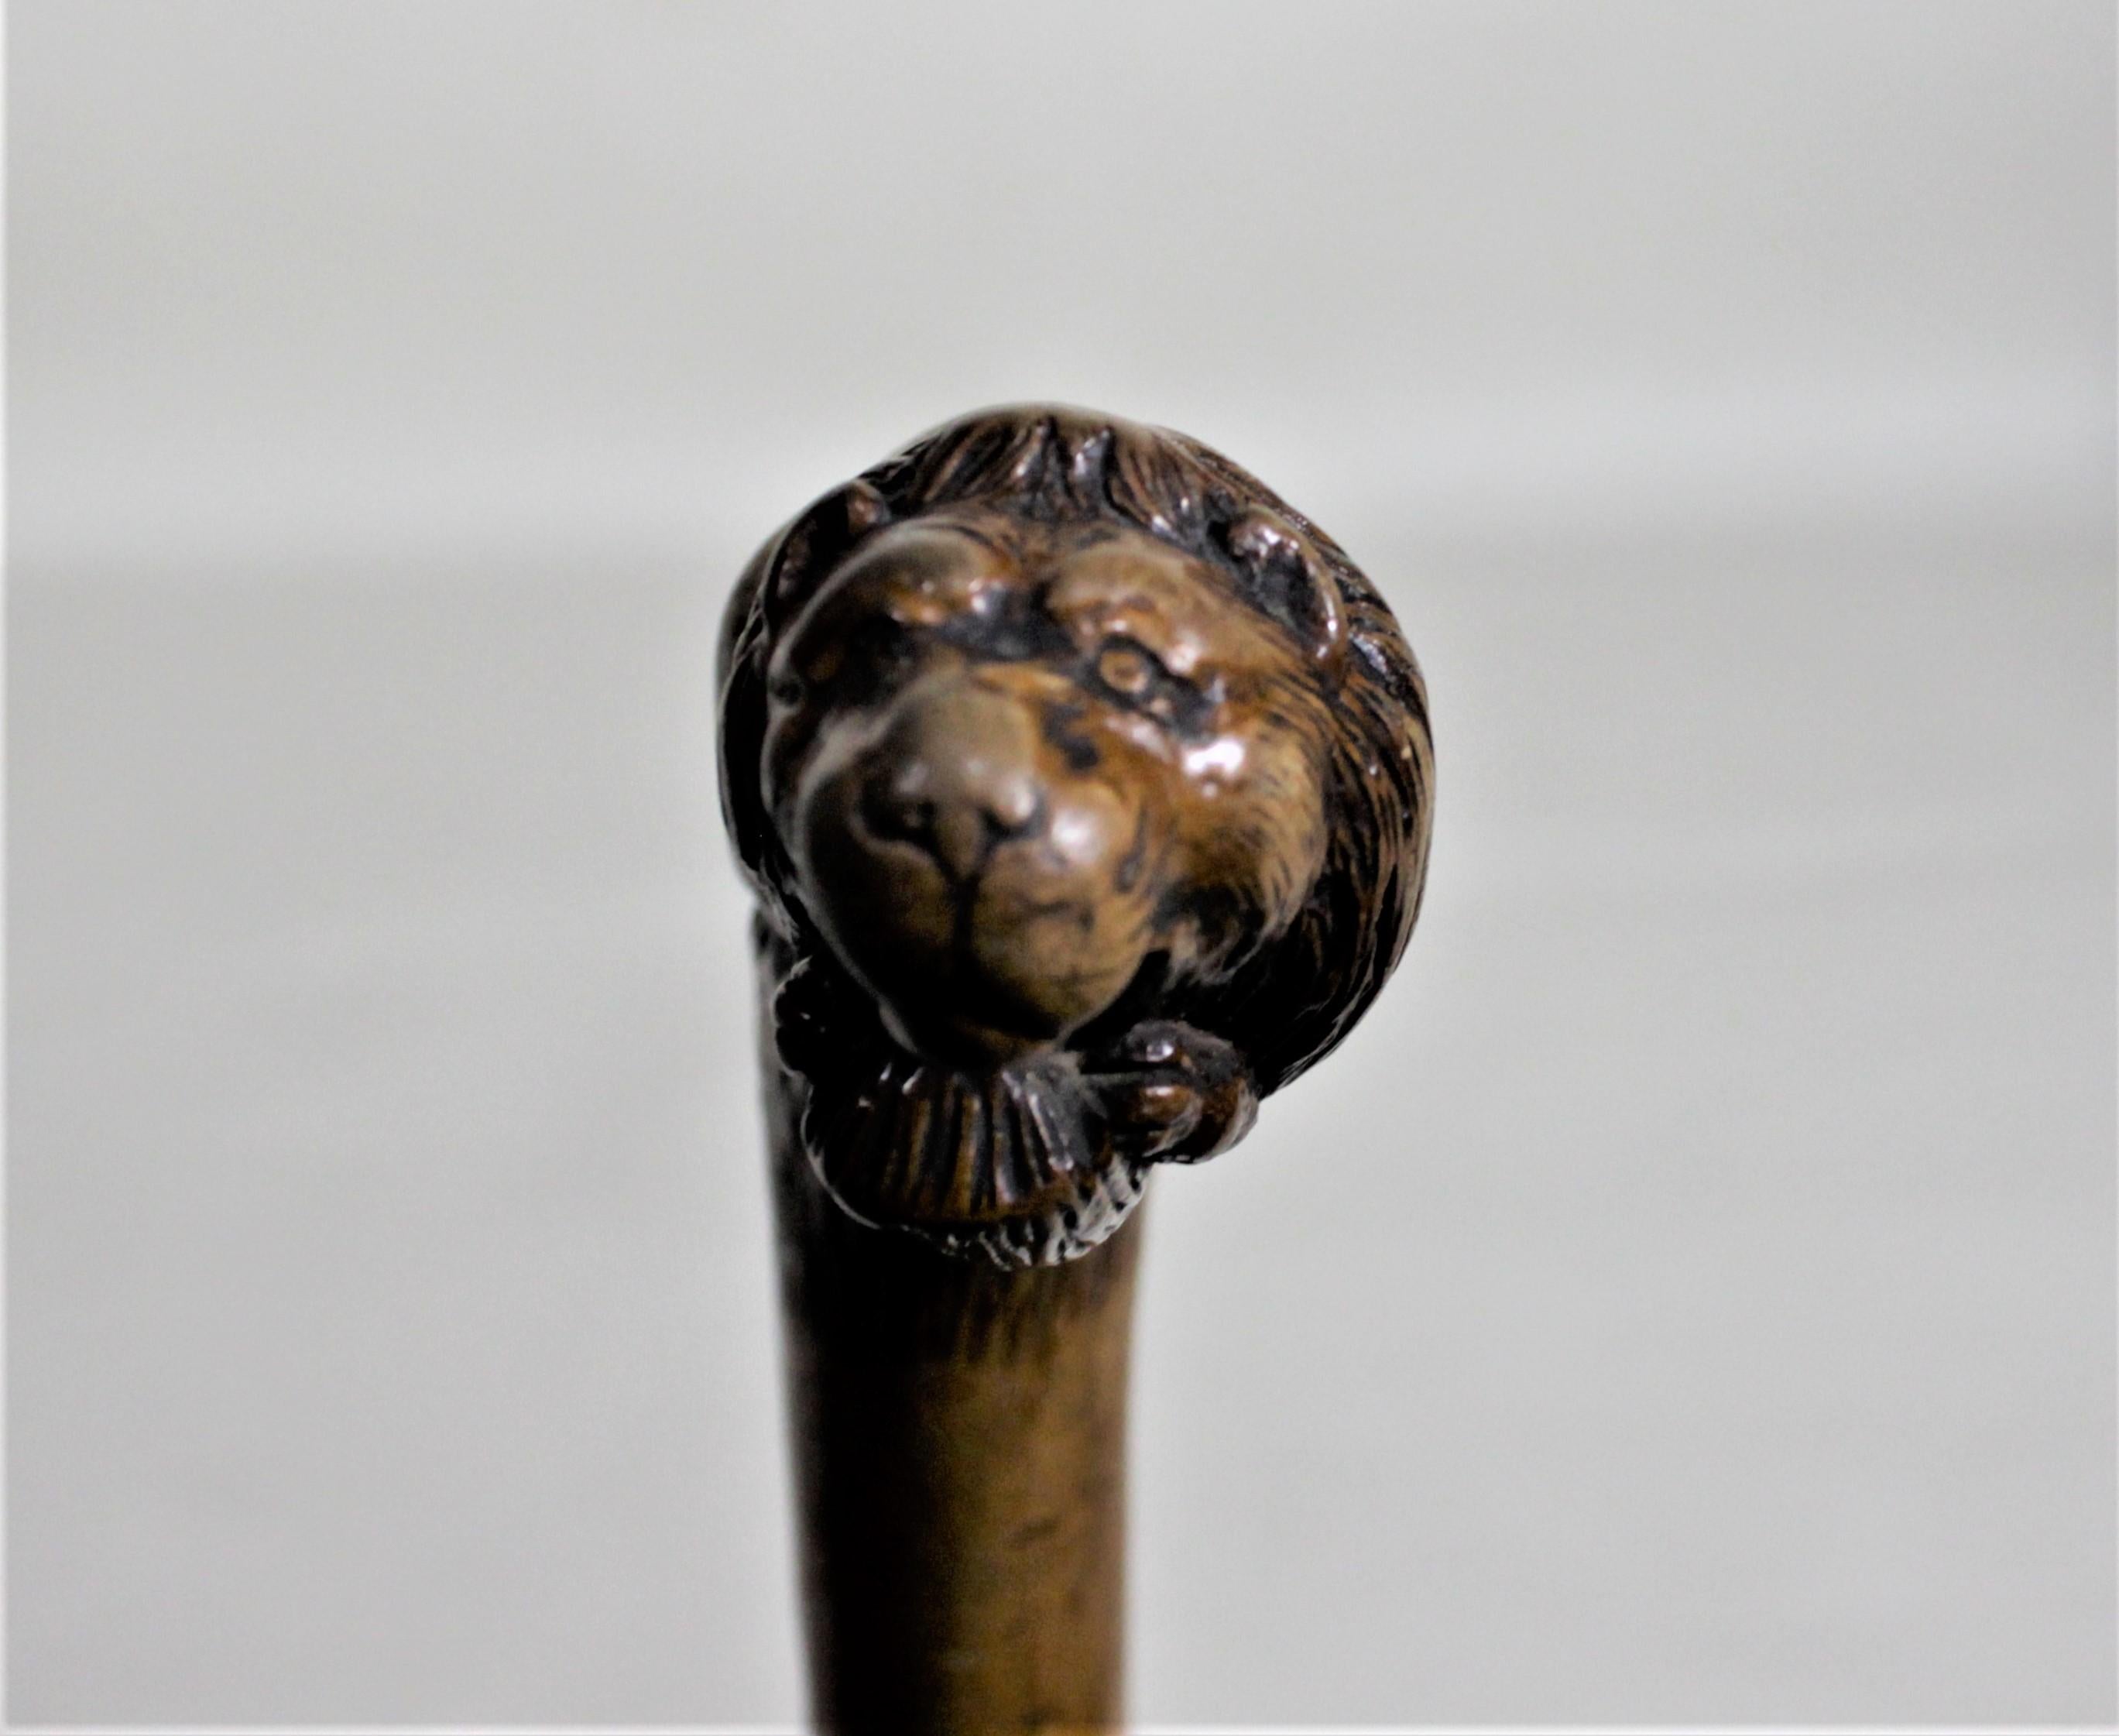 Edwardian Antique Folk Art Hand Carved Figural Seated Lion Handled Cane or Walking Stick